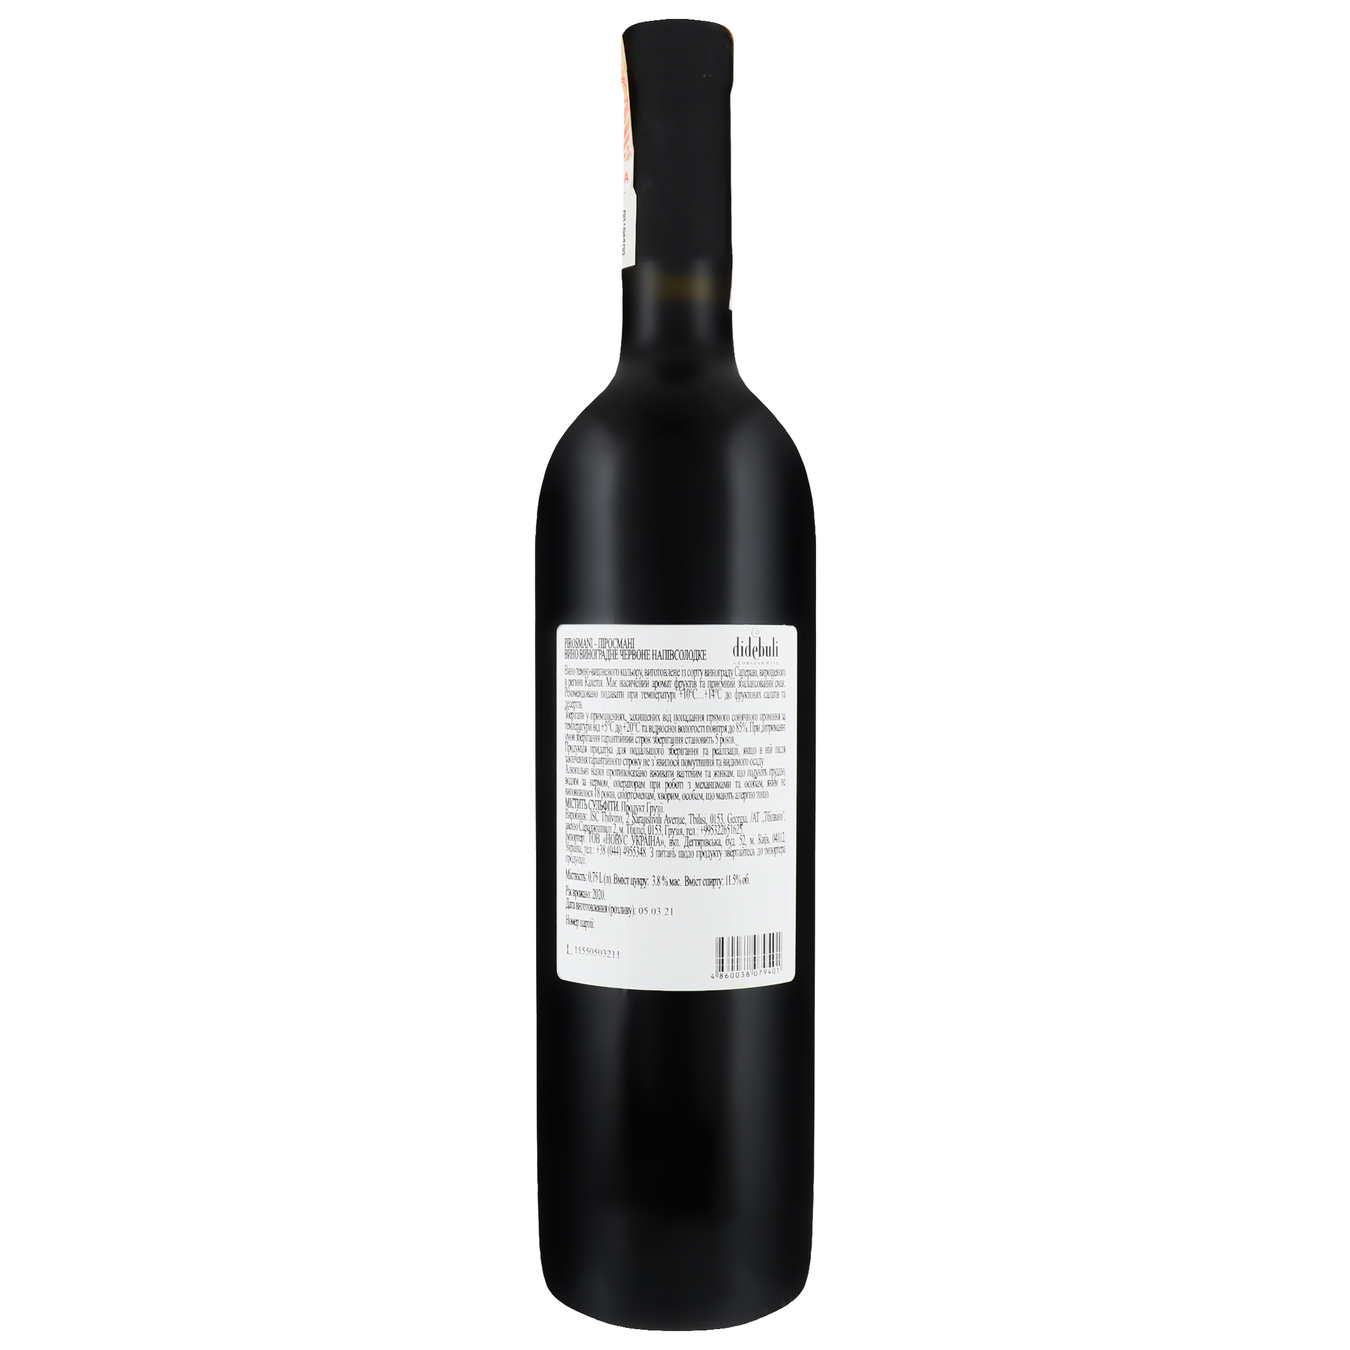 Didebuli Pirosmani red semi-sweet wine 11,5% 0,75l 2